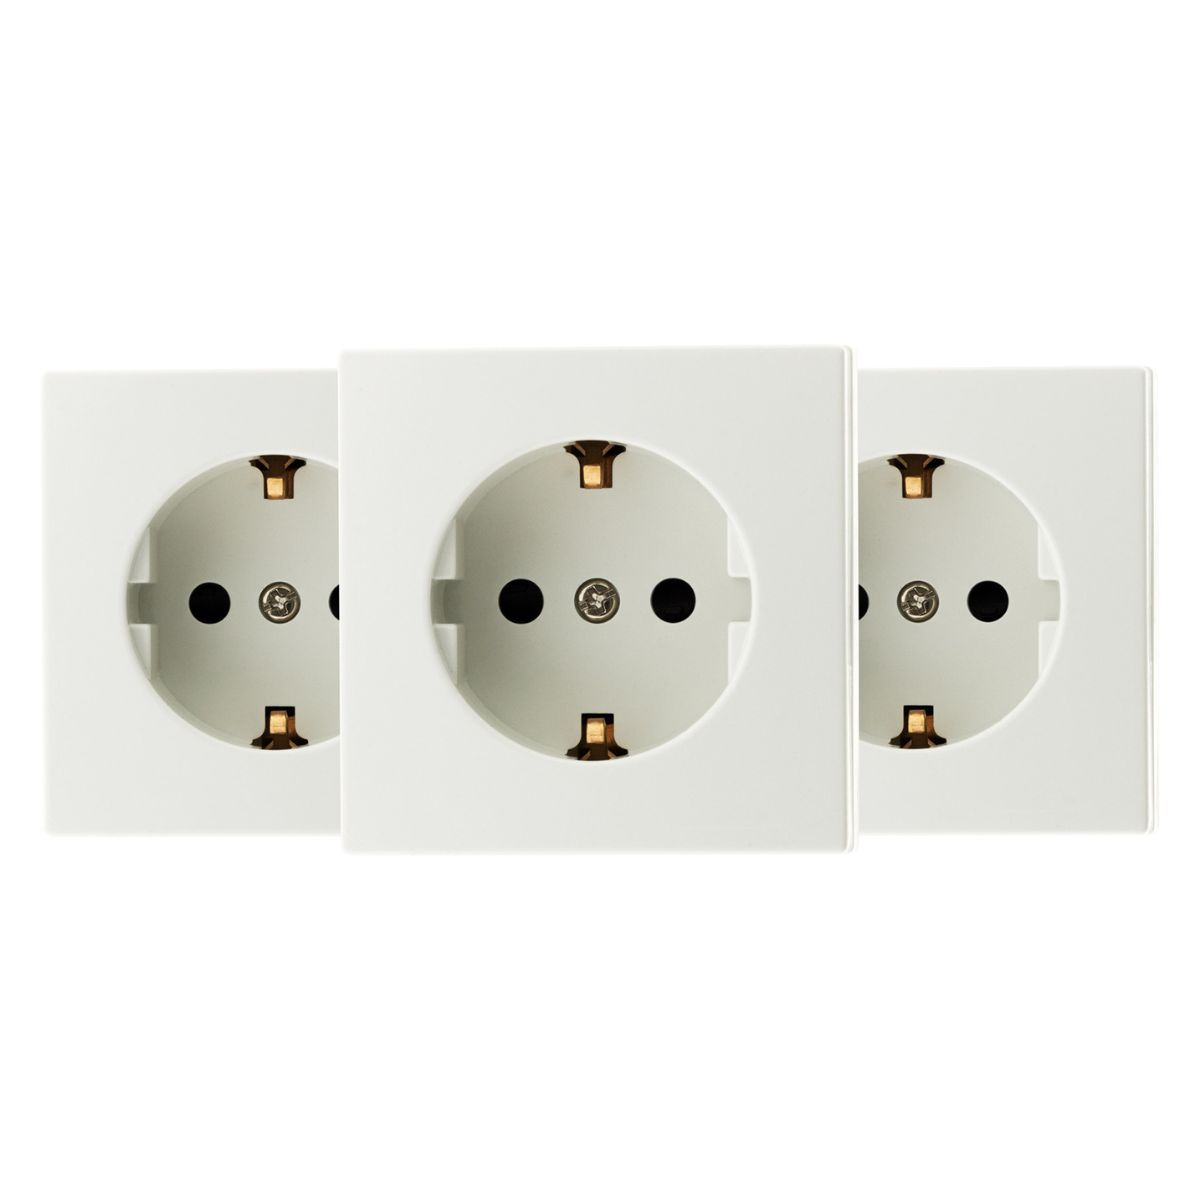 BEL’VUE 16A Weiß (3 Stück) & Dimmer Schalter